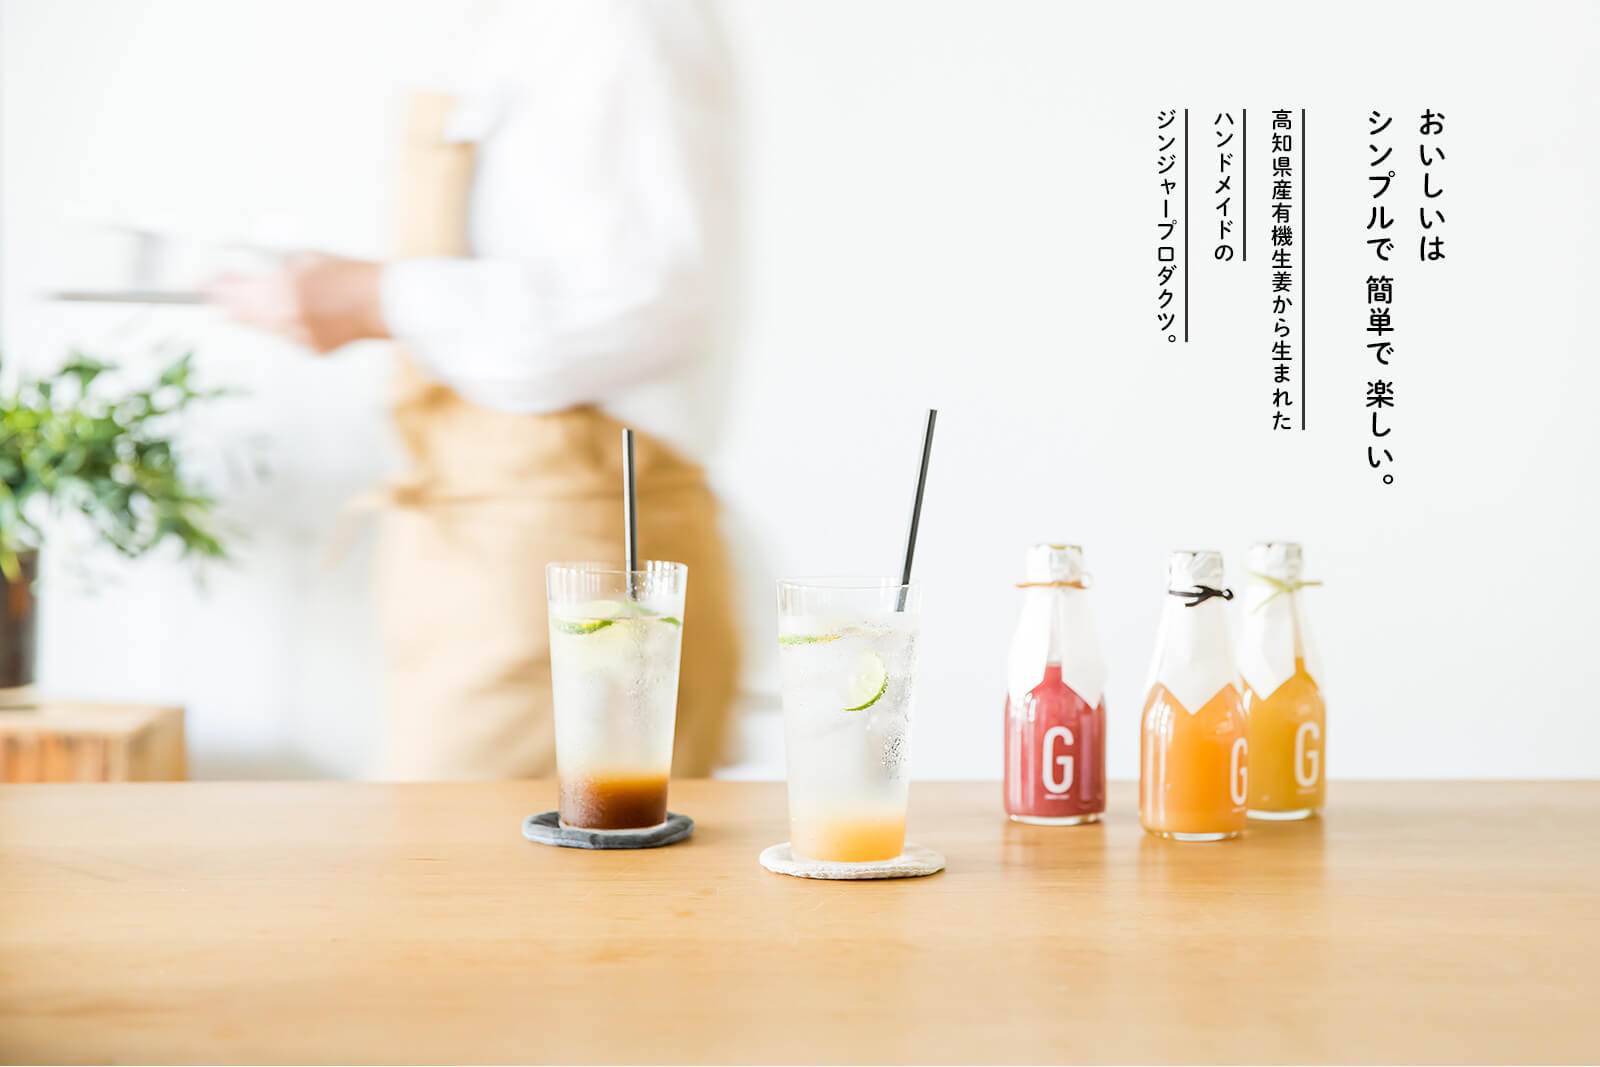 おいしいはシンプルで 簡単で楽しい。高知県産有機生姜から生まれたハンドメイドのジンジャープロダクツ。